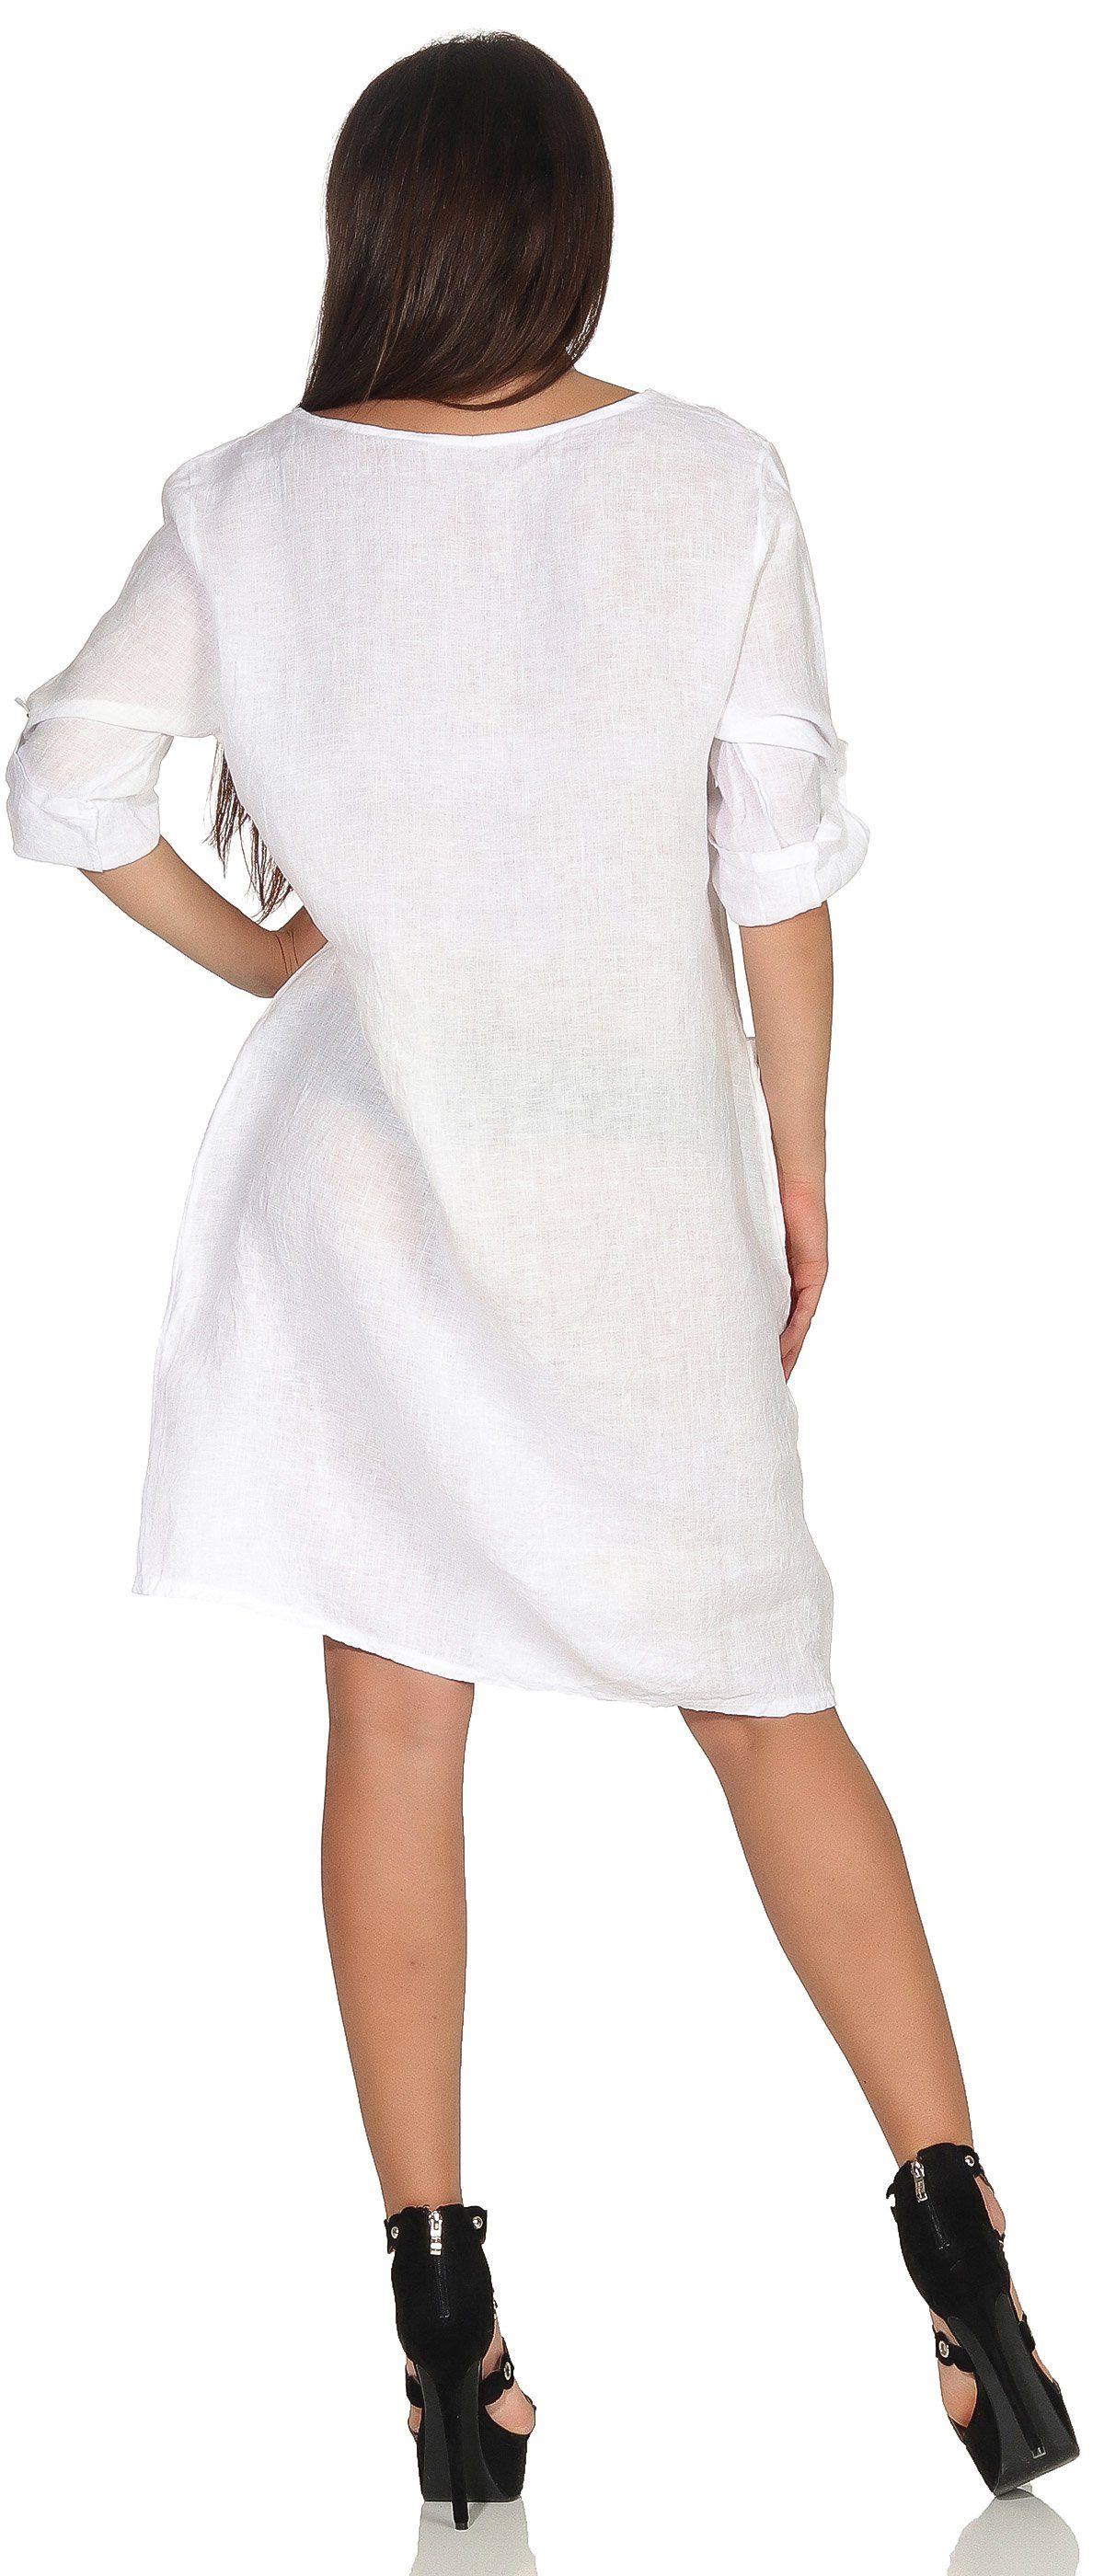 Mississhop Sommerkleid Leinenkleid Damenkleid Leinen Weiß 100% M.306